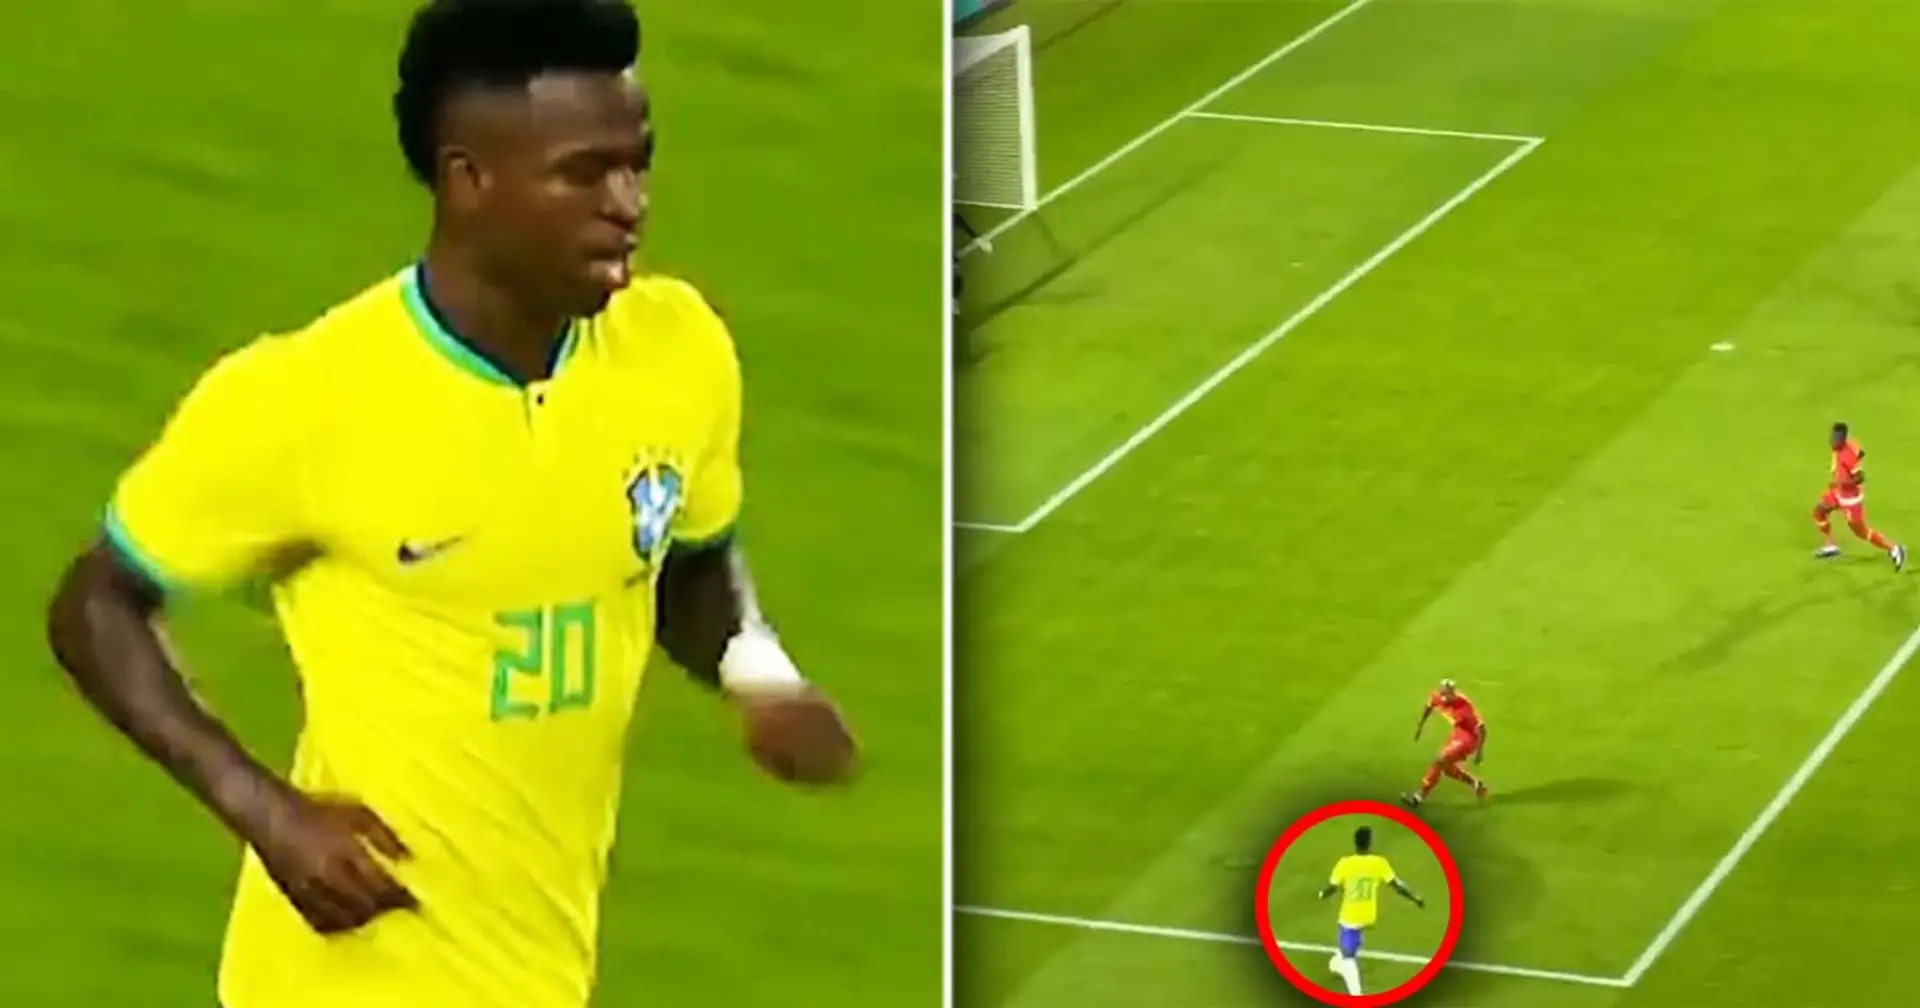 "Modric-esque": le magnifique geste de Vinicius avec le Brésil devient viral